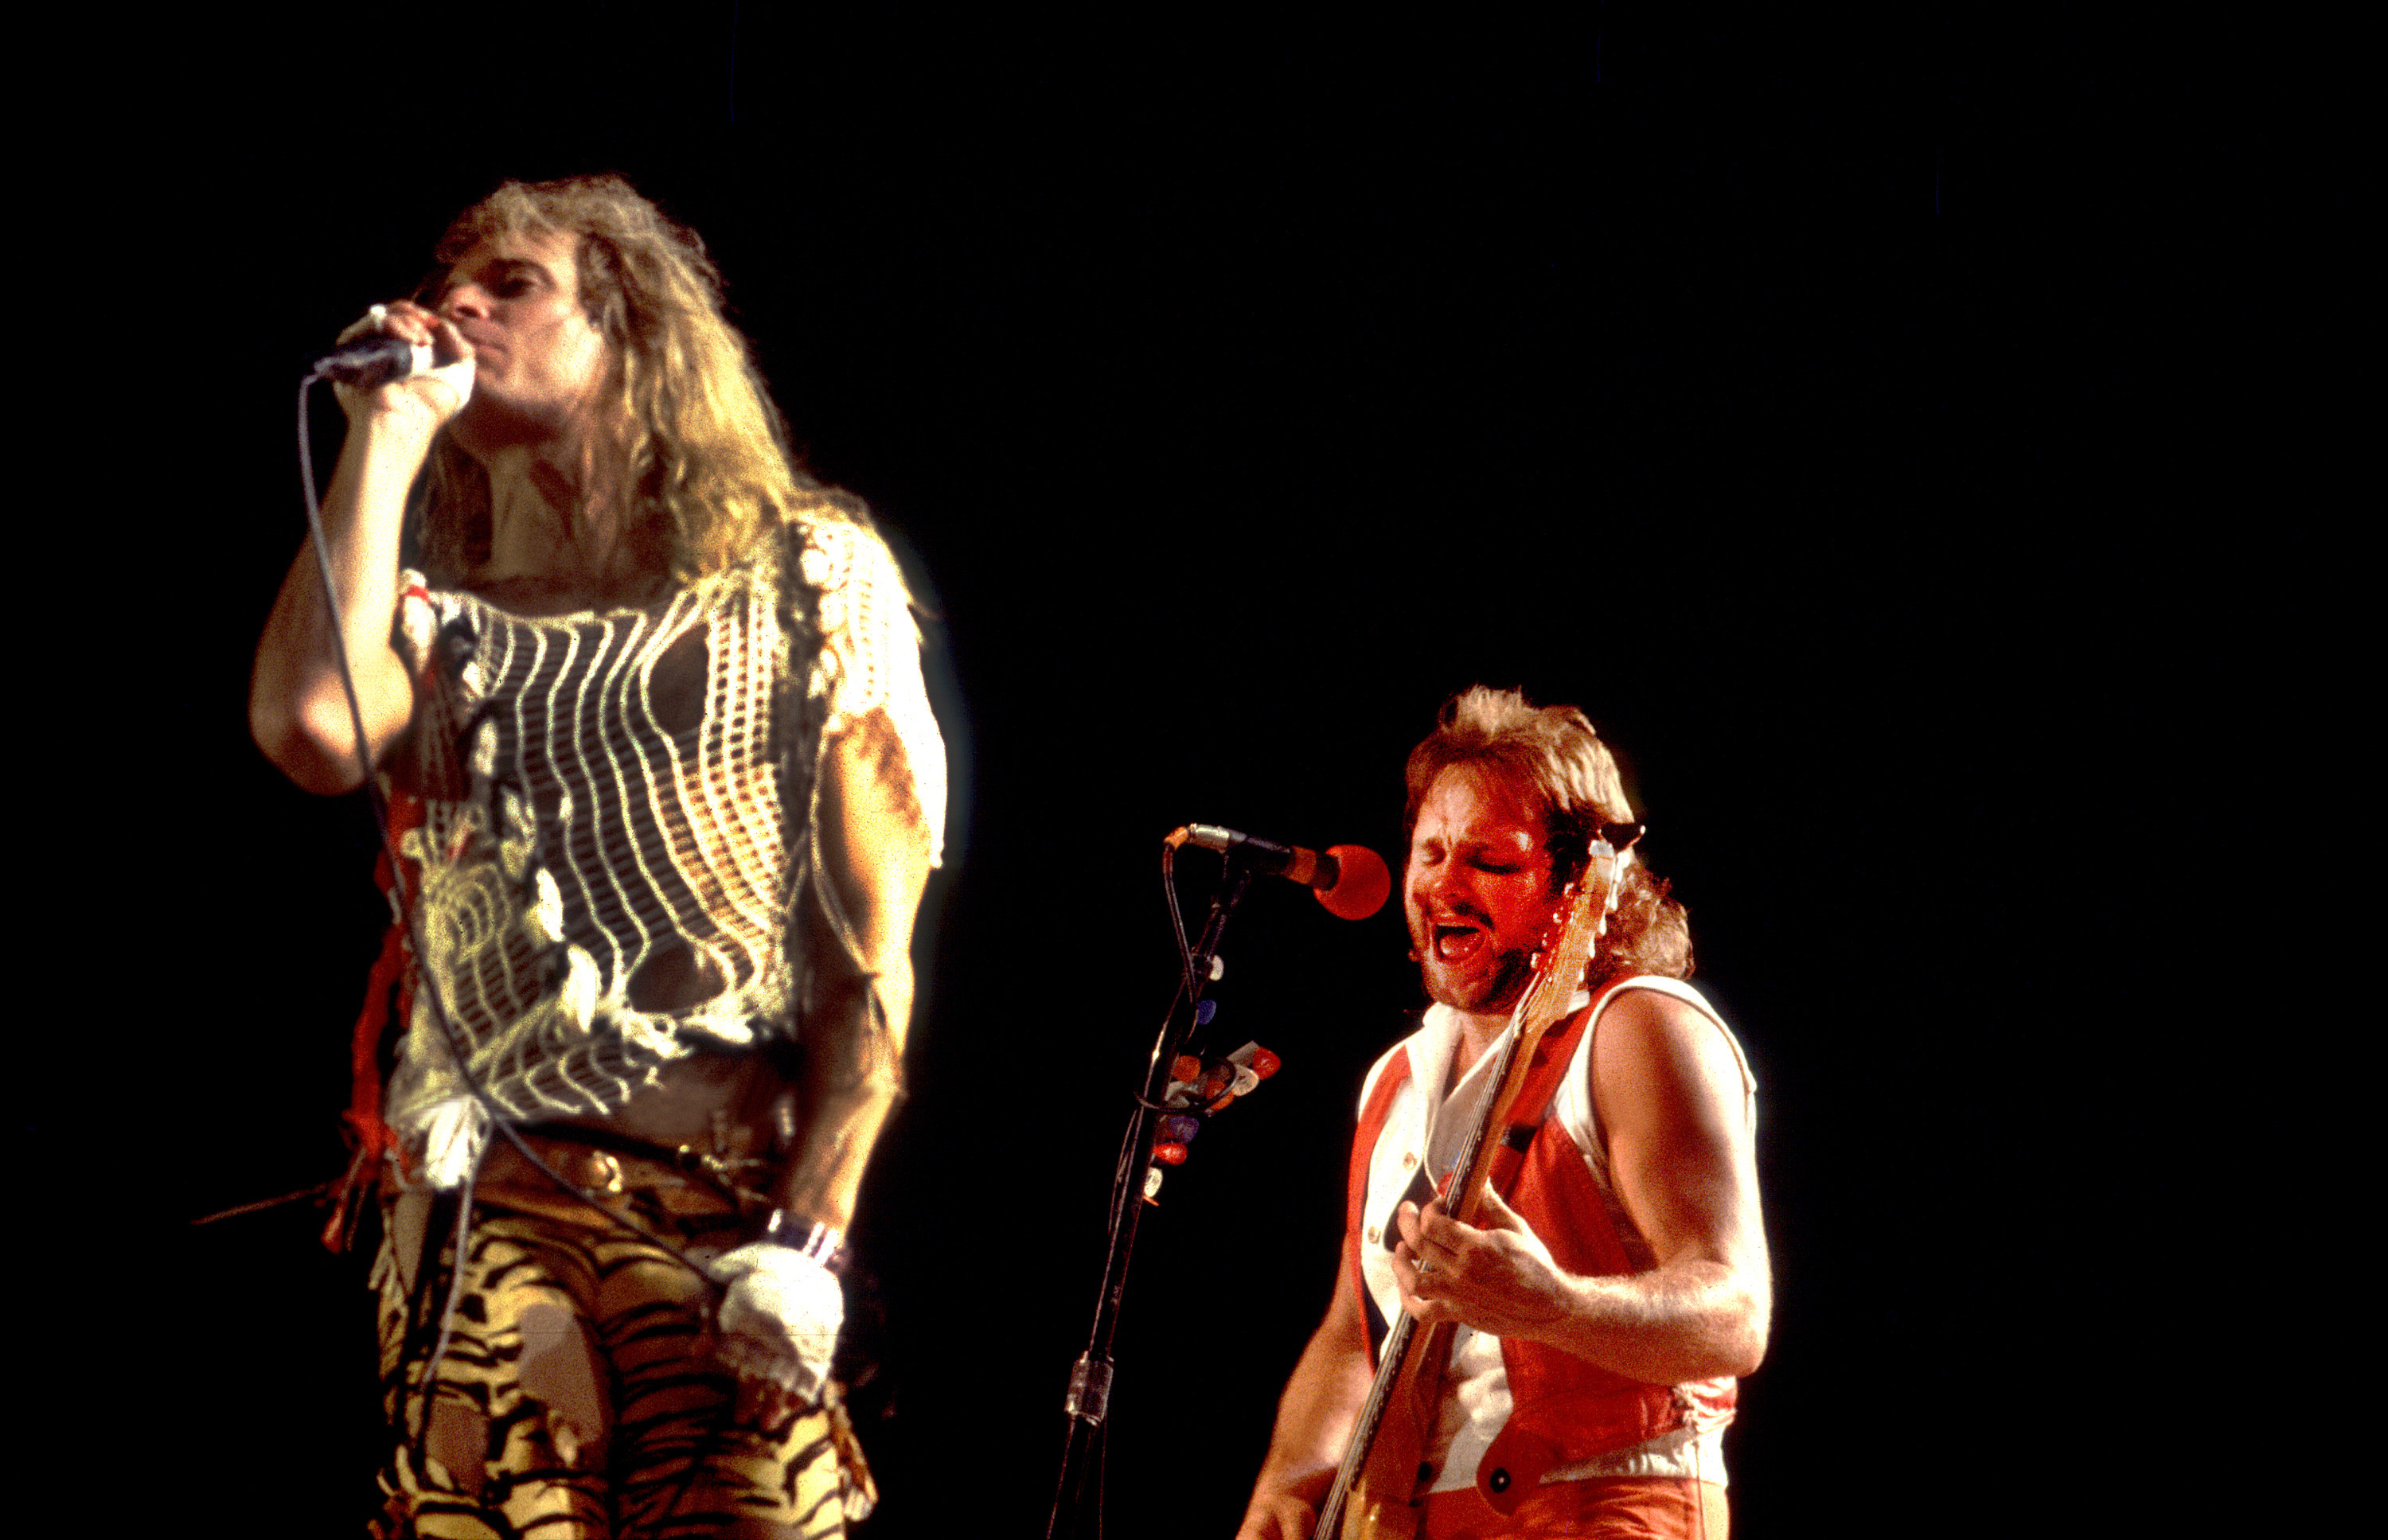 Van Halen performing in 1983